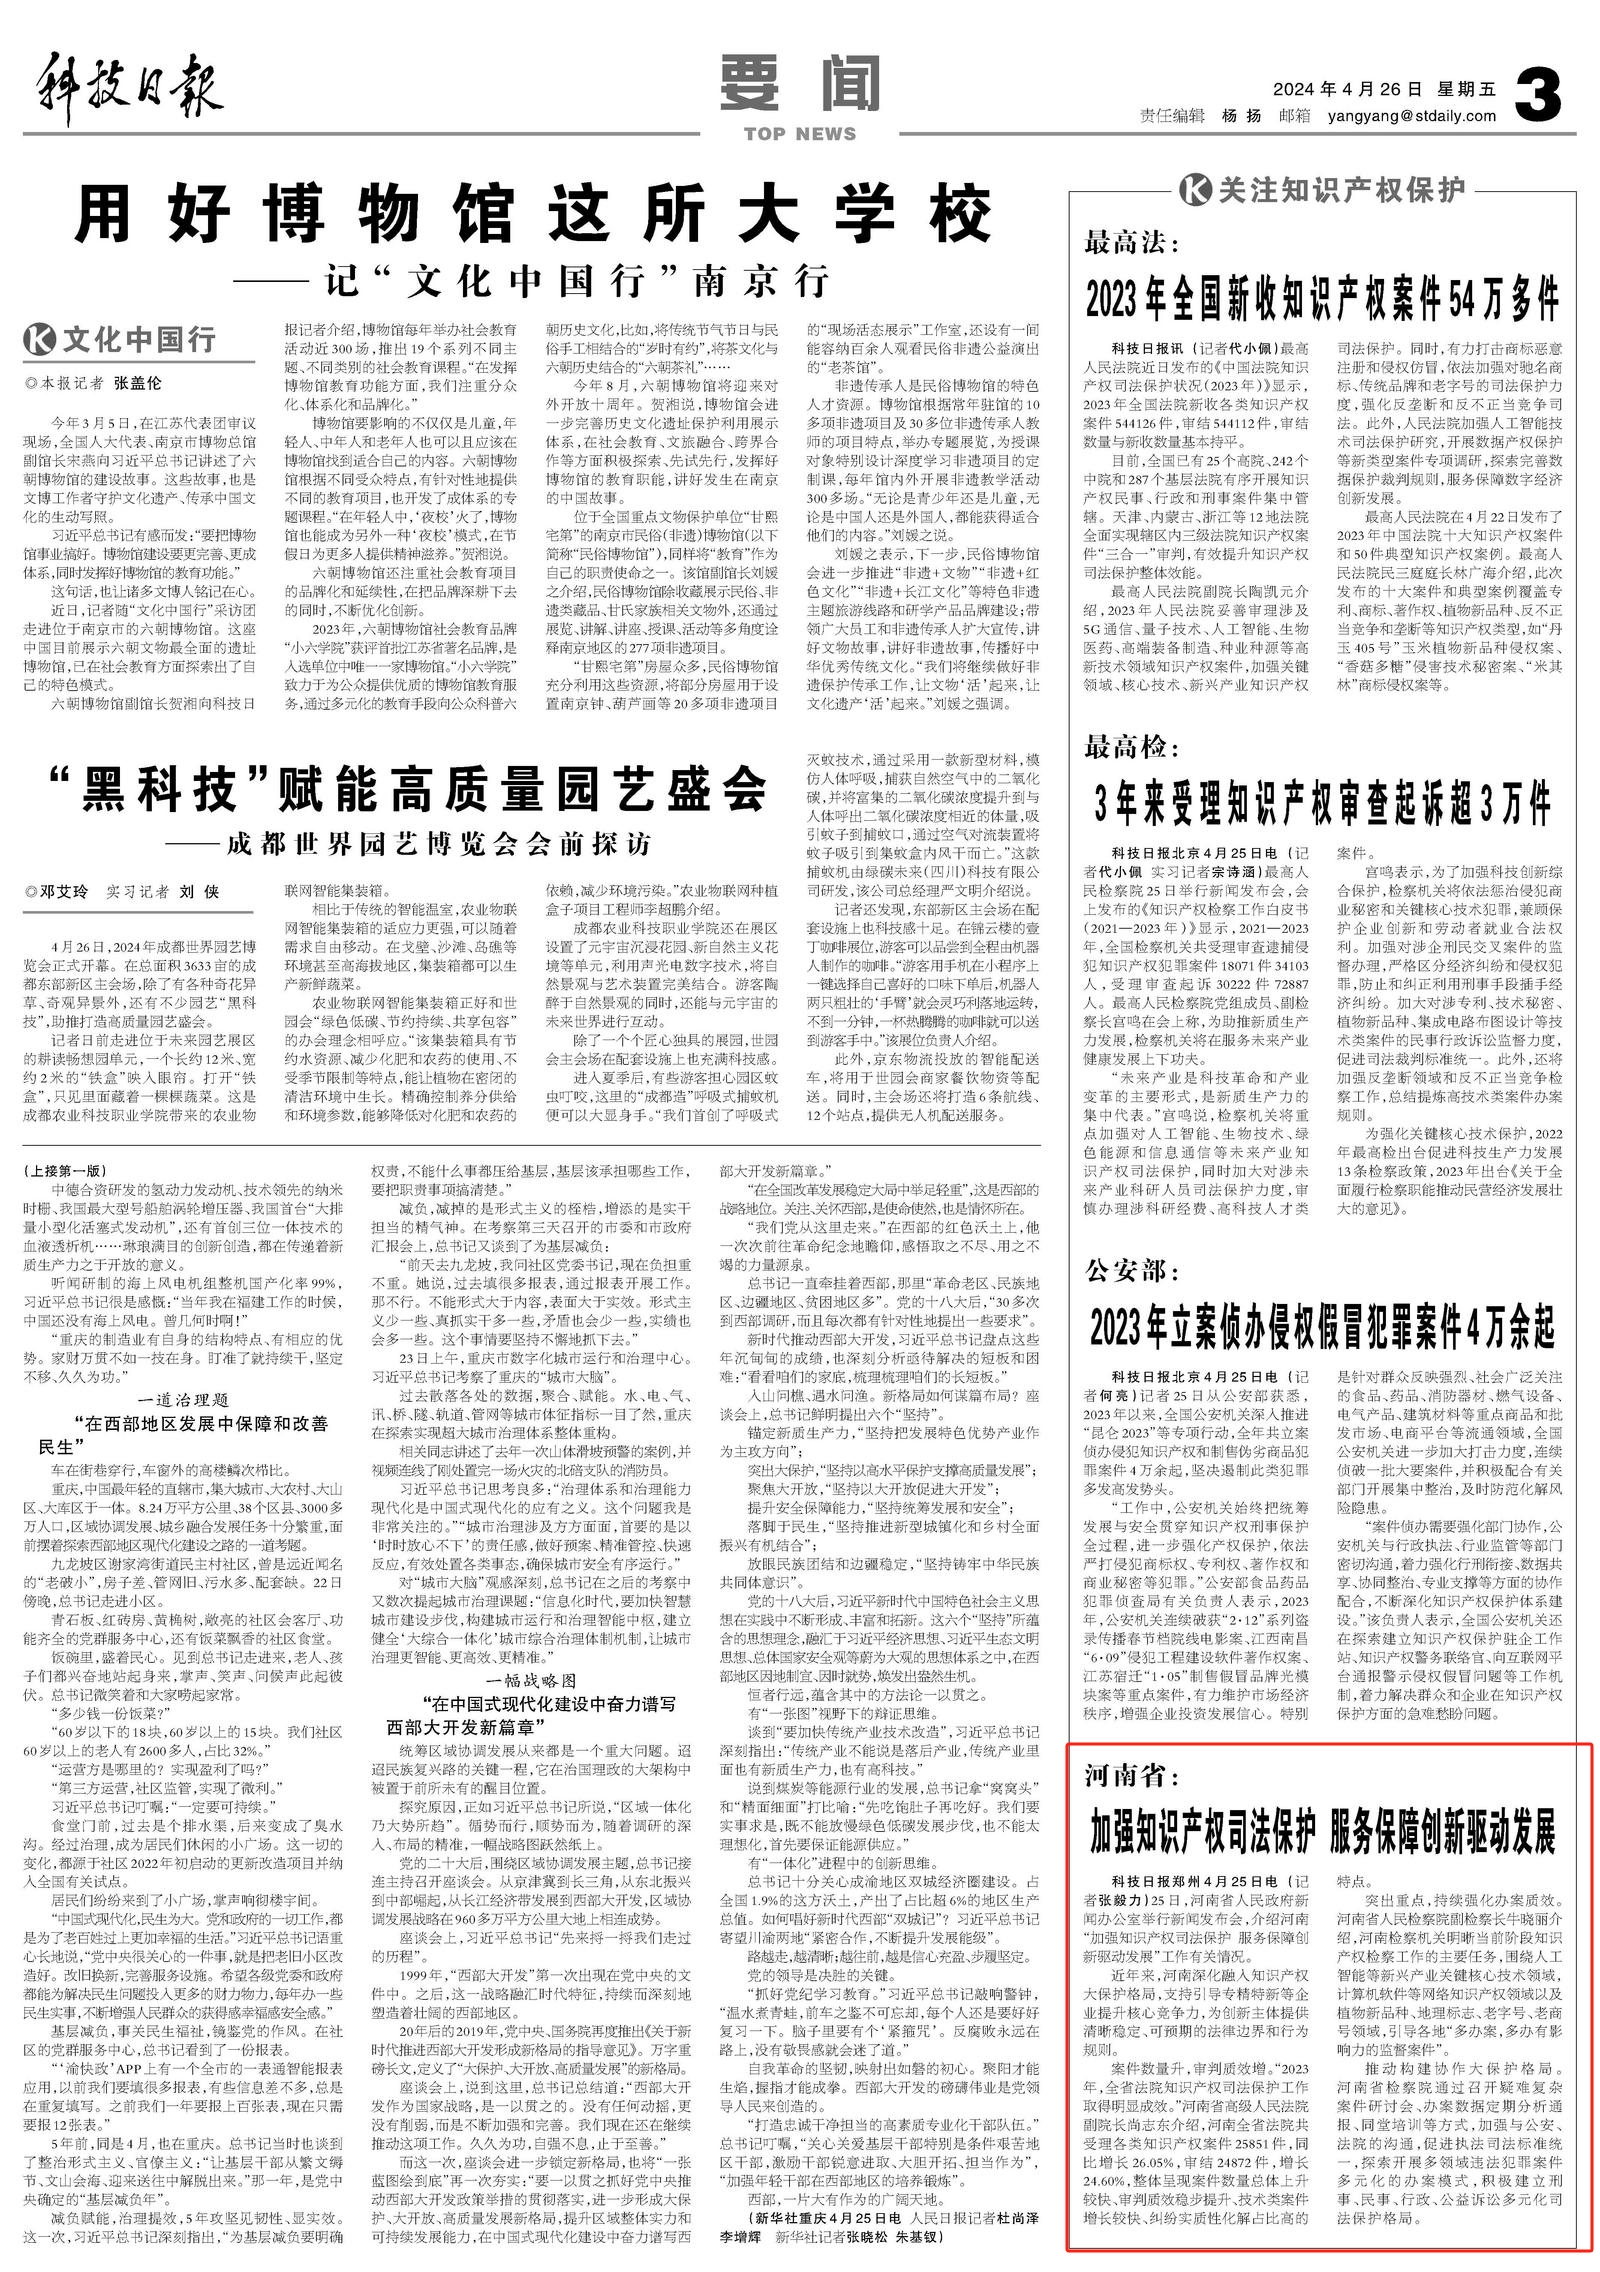 央媒观豫 | 河南省： 加强知识产权司法保护 服务保障创新驱动发展